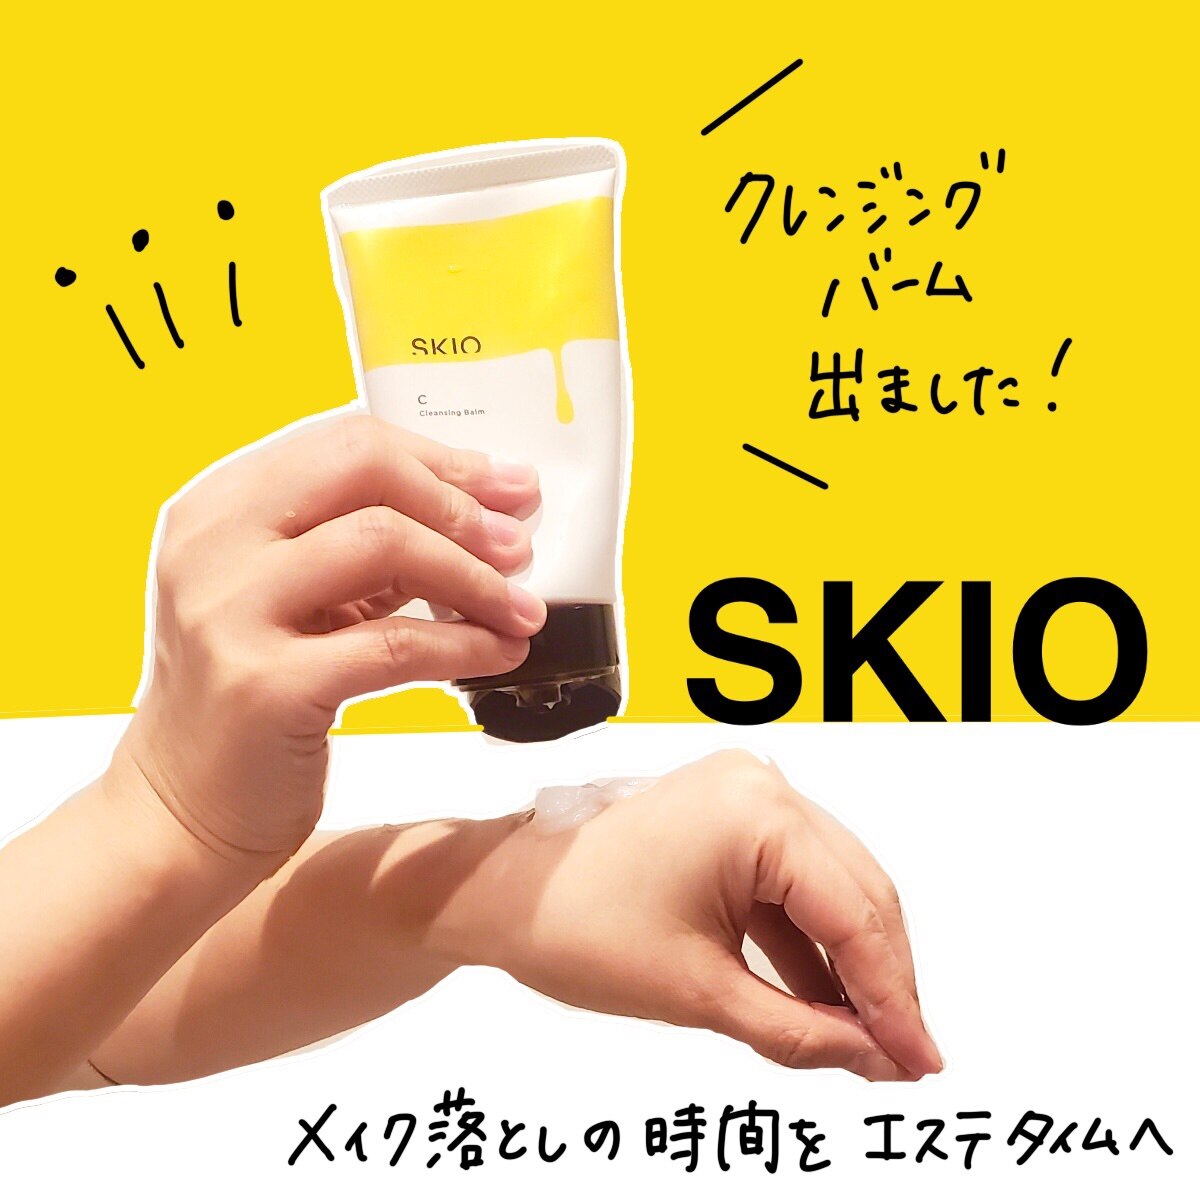 ロート製薬 SKIO VC スキオ3点セット - 洗顔料